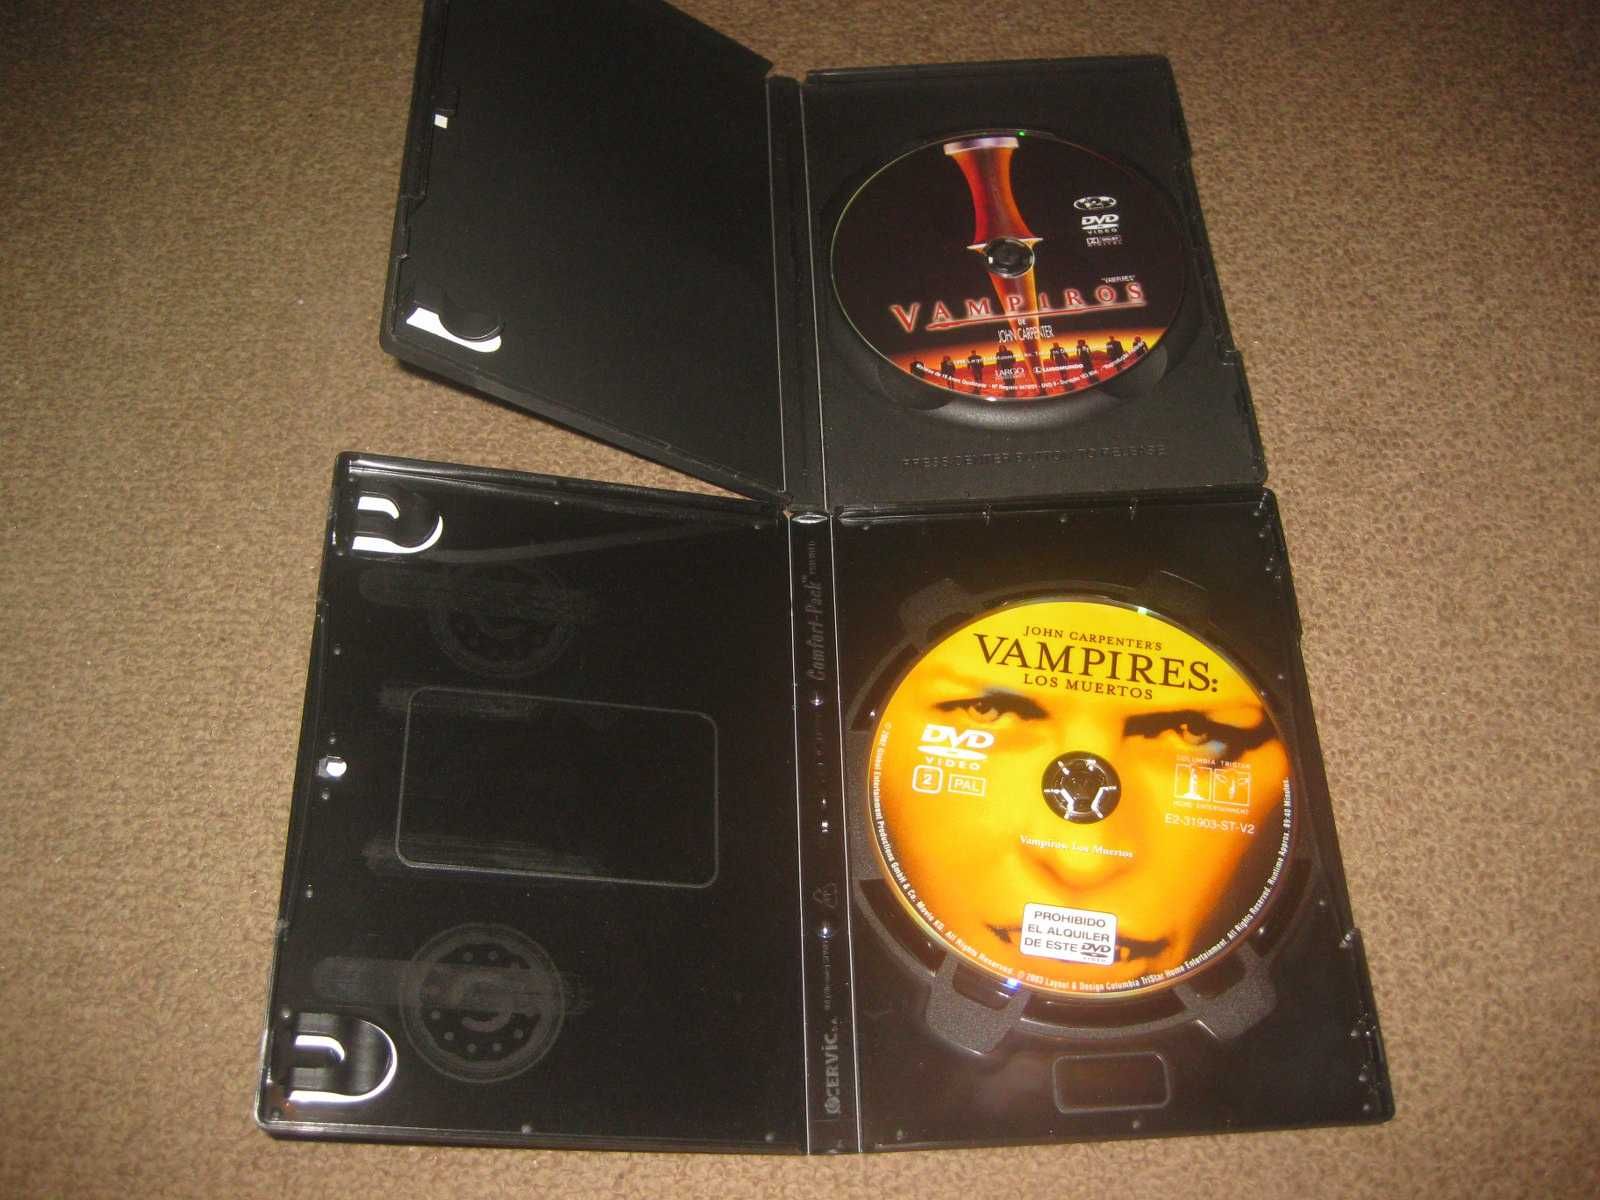 Colecção em DVD "Vampiros" de John Carpenter